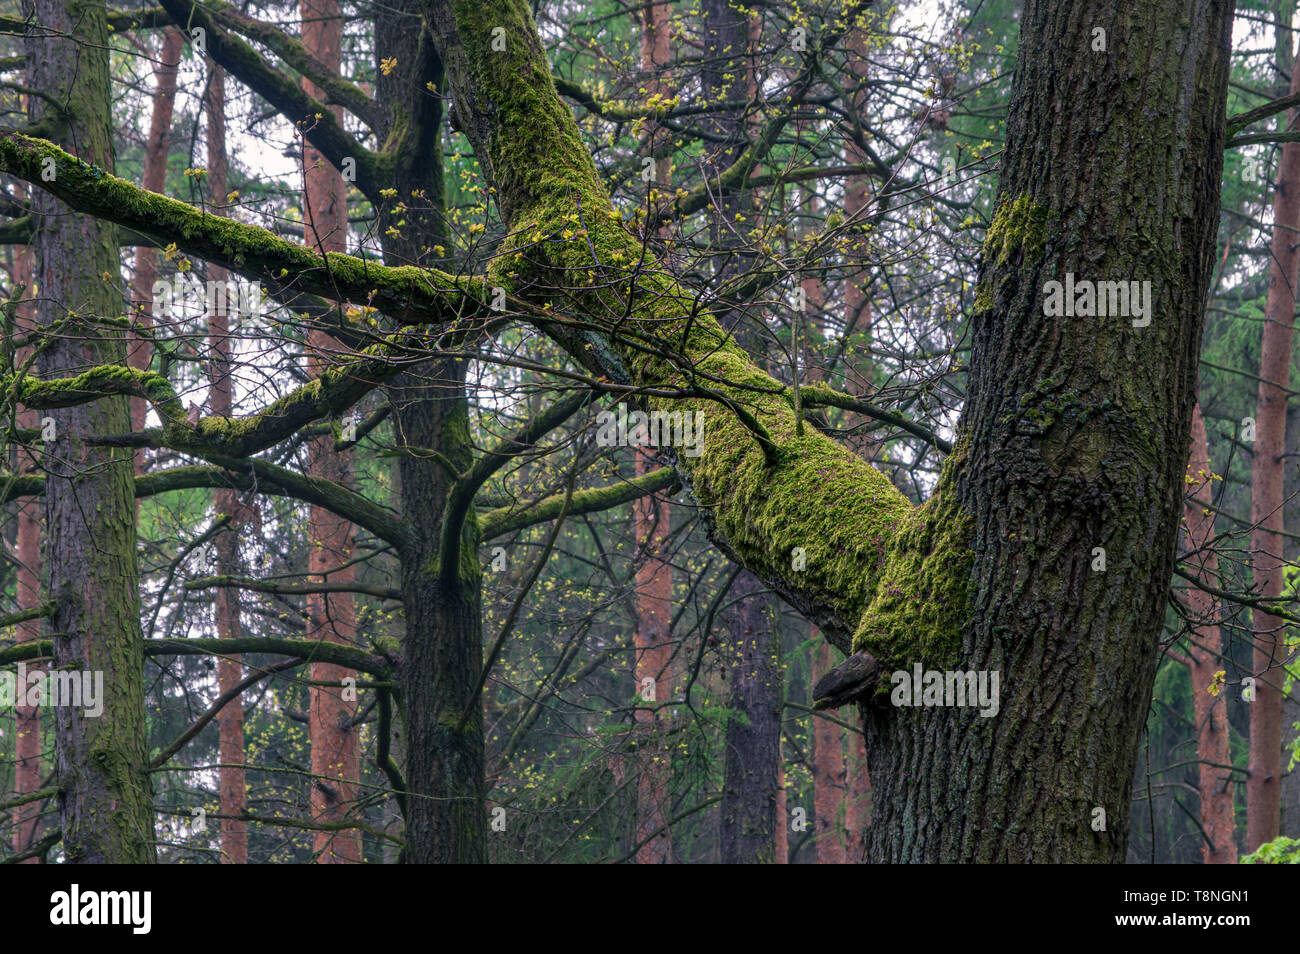 Bemoosten Ast in einem dunklen geheimnisvollen Wald in der Nähe von neundorf mit dem Eigen, Deutschland Stockfoto